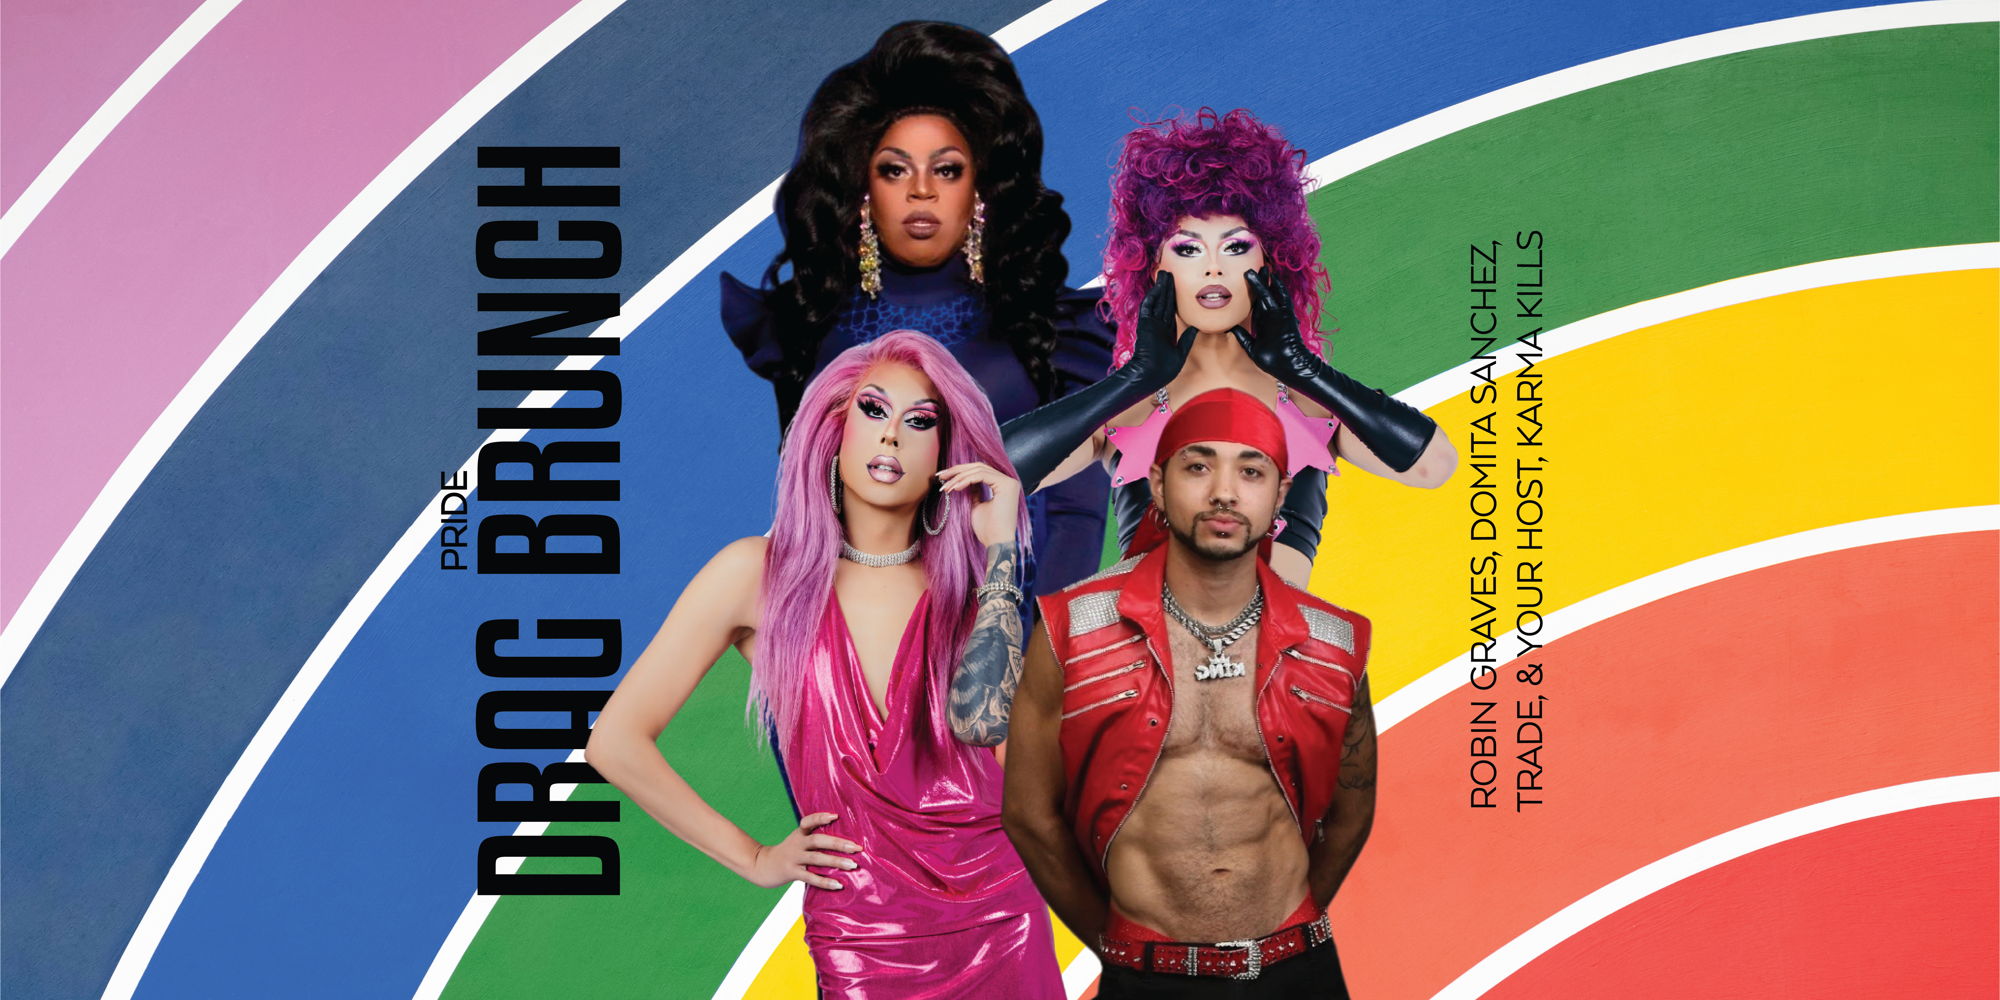 Pride Drag Brunch promotional image